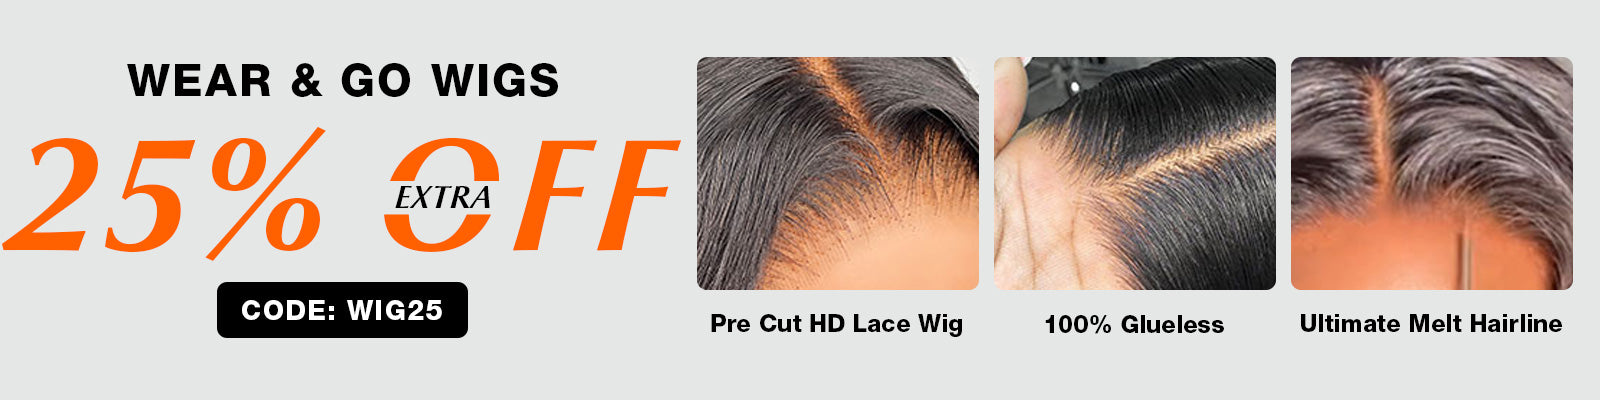 pre-cut lace wigs